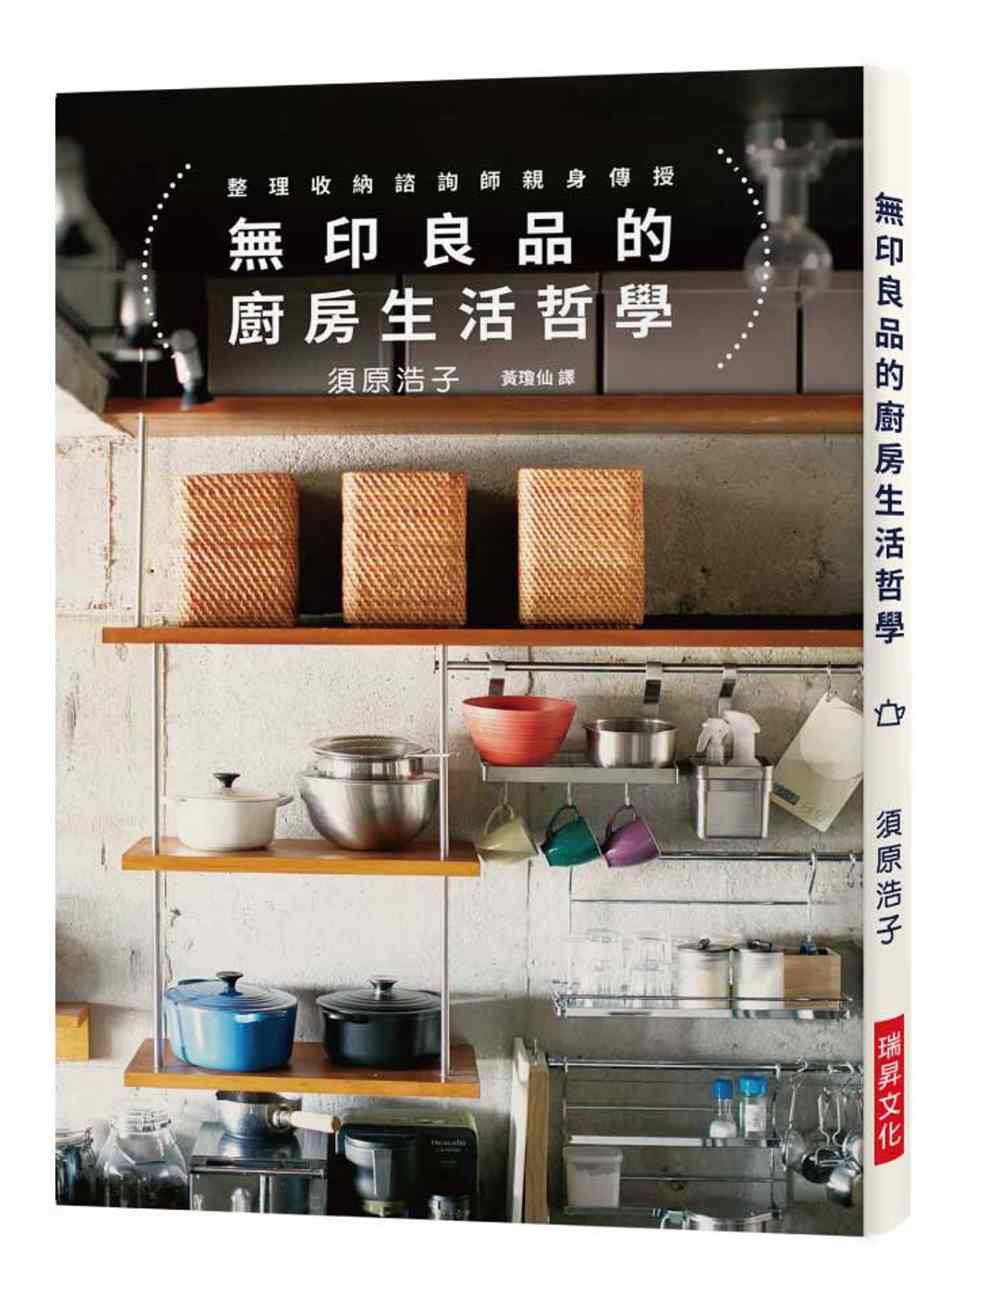 無印良品的廚房生活哲學：相同的無印良品X不同的生活風格，竟能產生?百變的居家景致?！